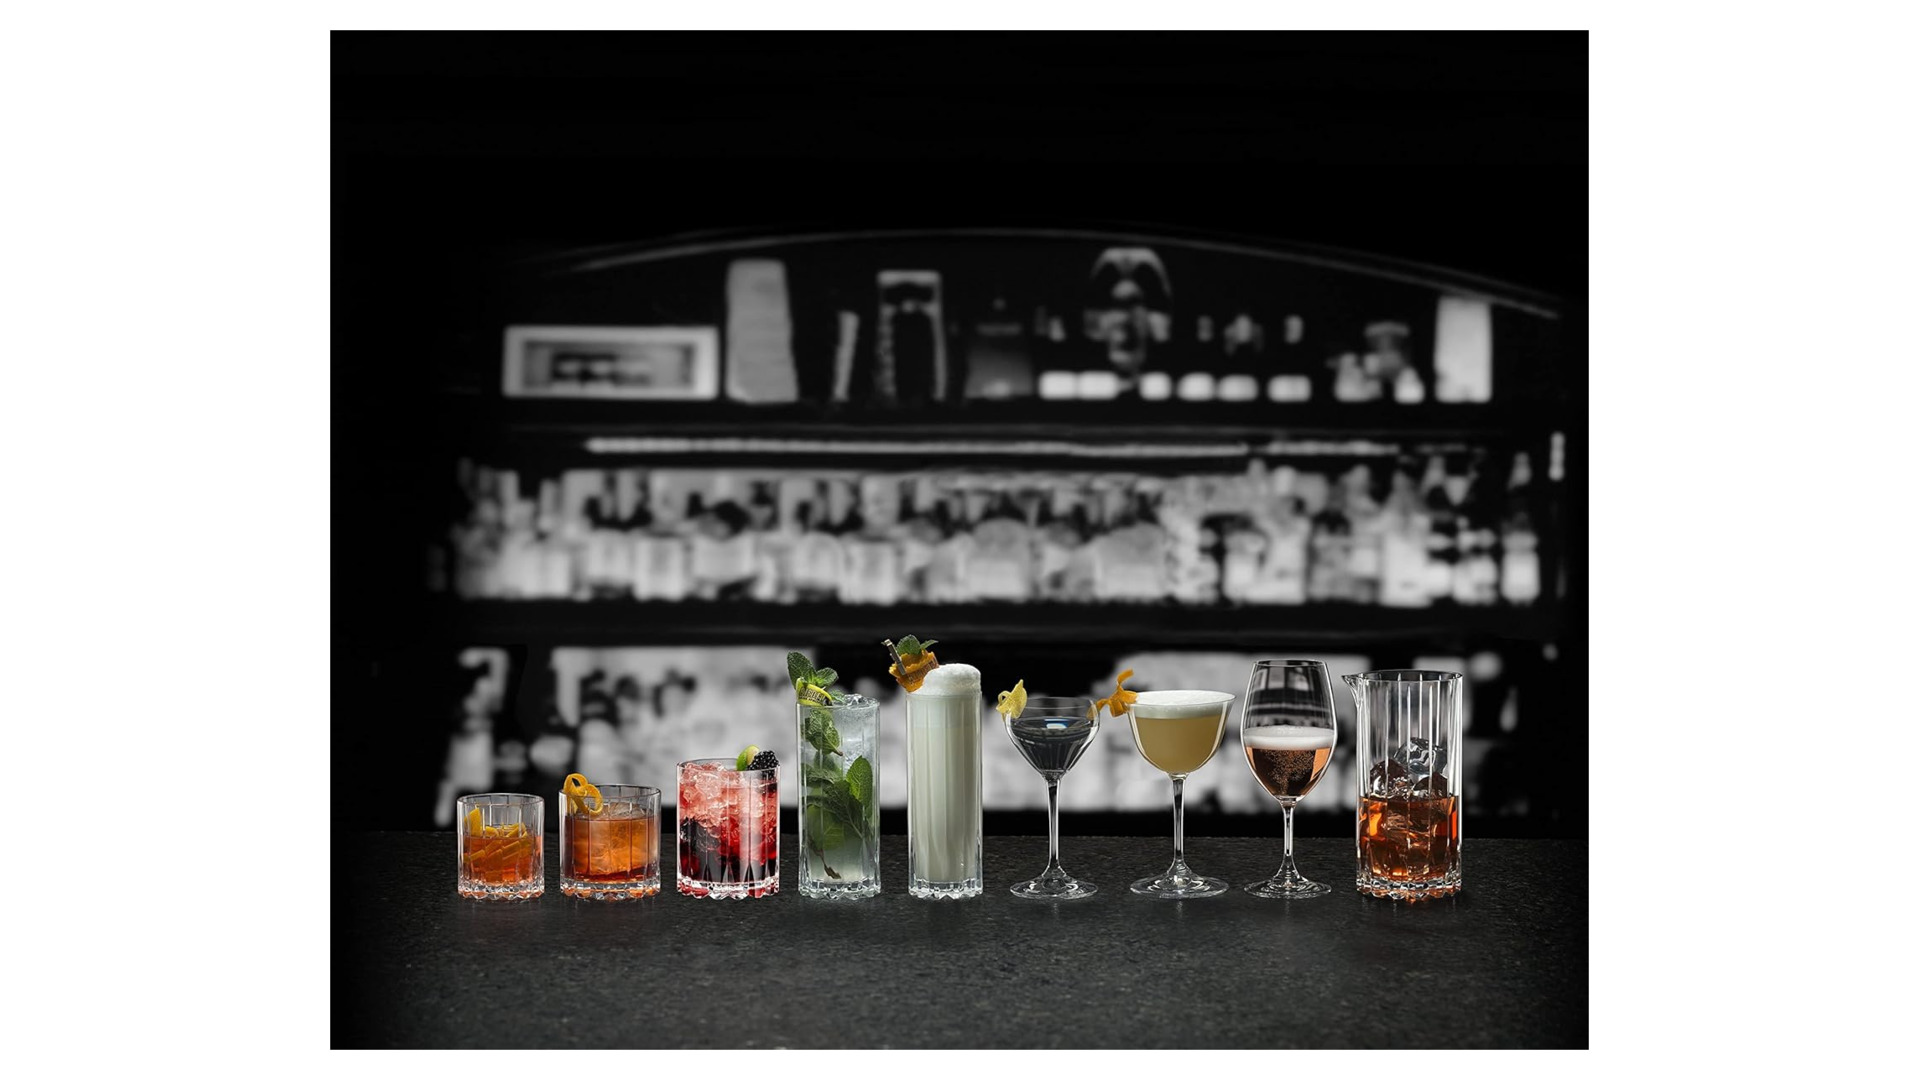 Набор бокалов для коктейля Riedel Bar Sour 217 мл, h16 см, 2шт, стекло хрустальное